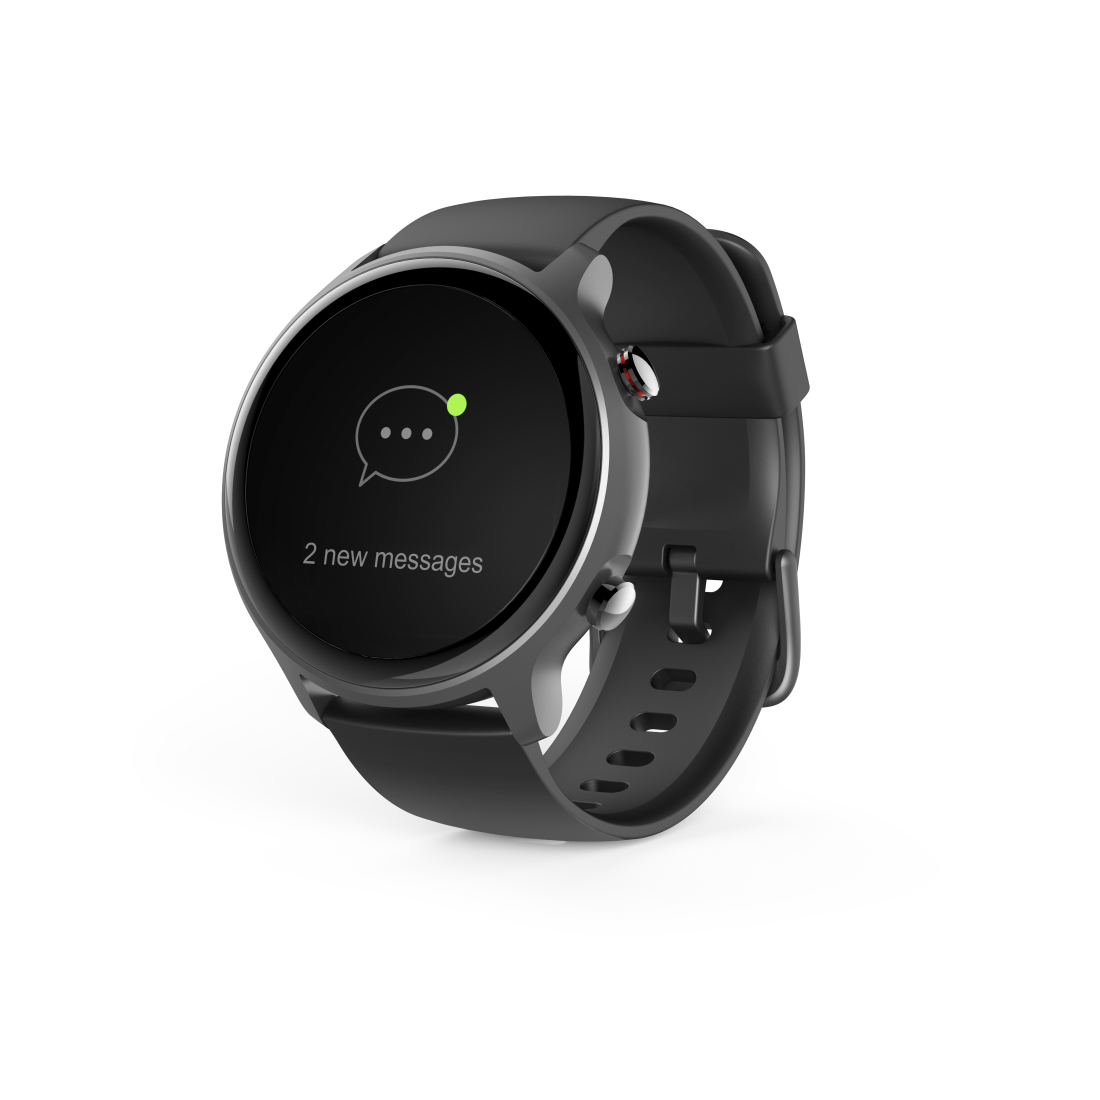 Hama Smartwatch Fit Watch 6910, GPS, waterdicht, hartslag, zuurstofgeh. bloed